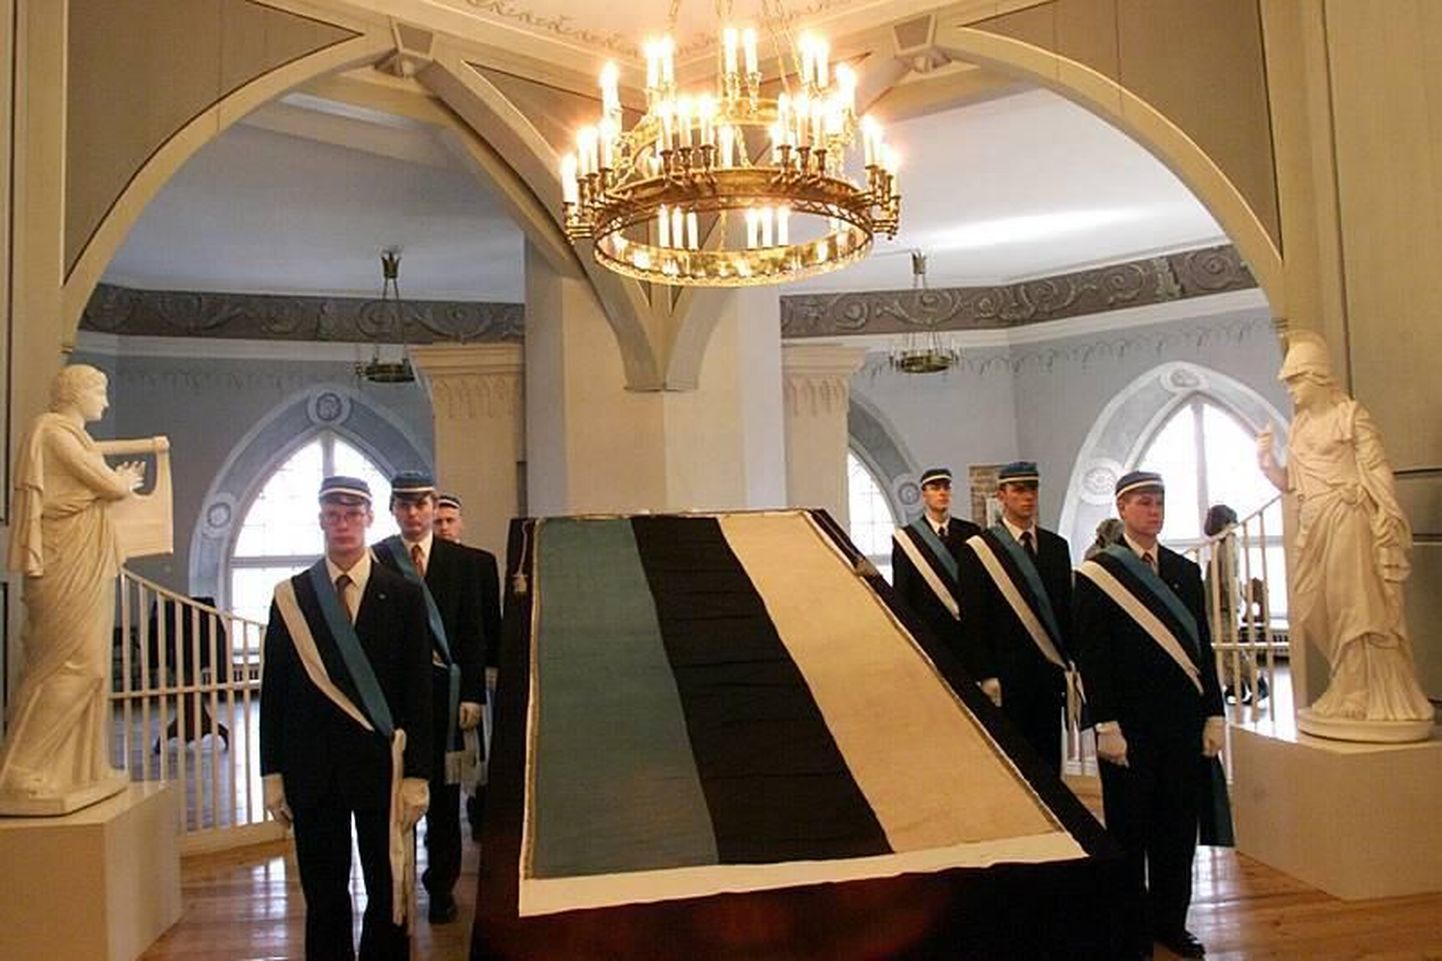 Eesti Üliõpilaste Seltsi ajaloolise lipu eksponeerimine Seltsi 130. aastapäeval Tartu Ülikooli ajaloo muuseumis aprillis 2000.